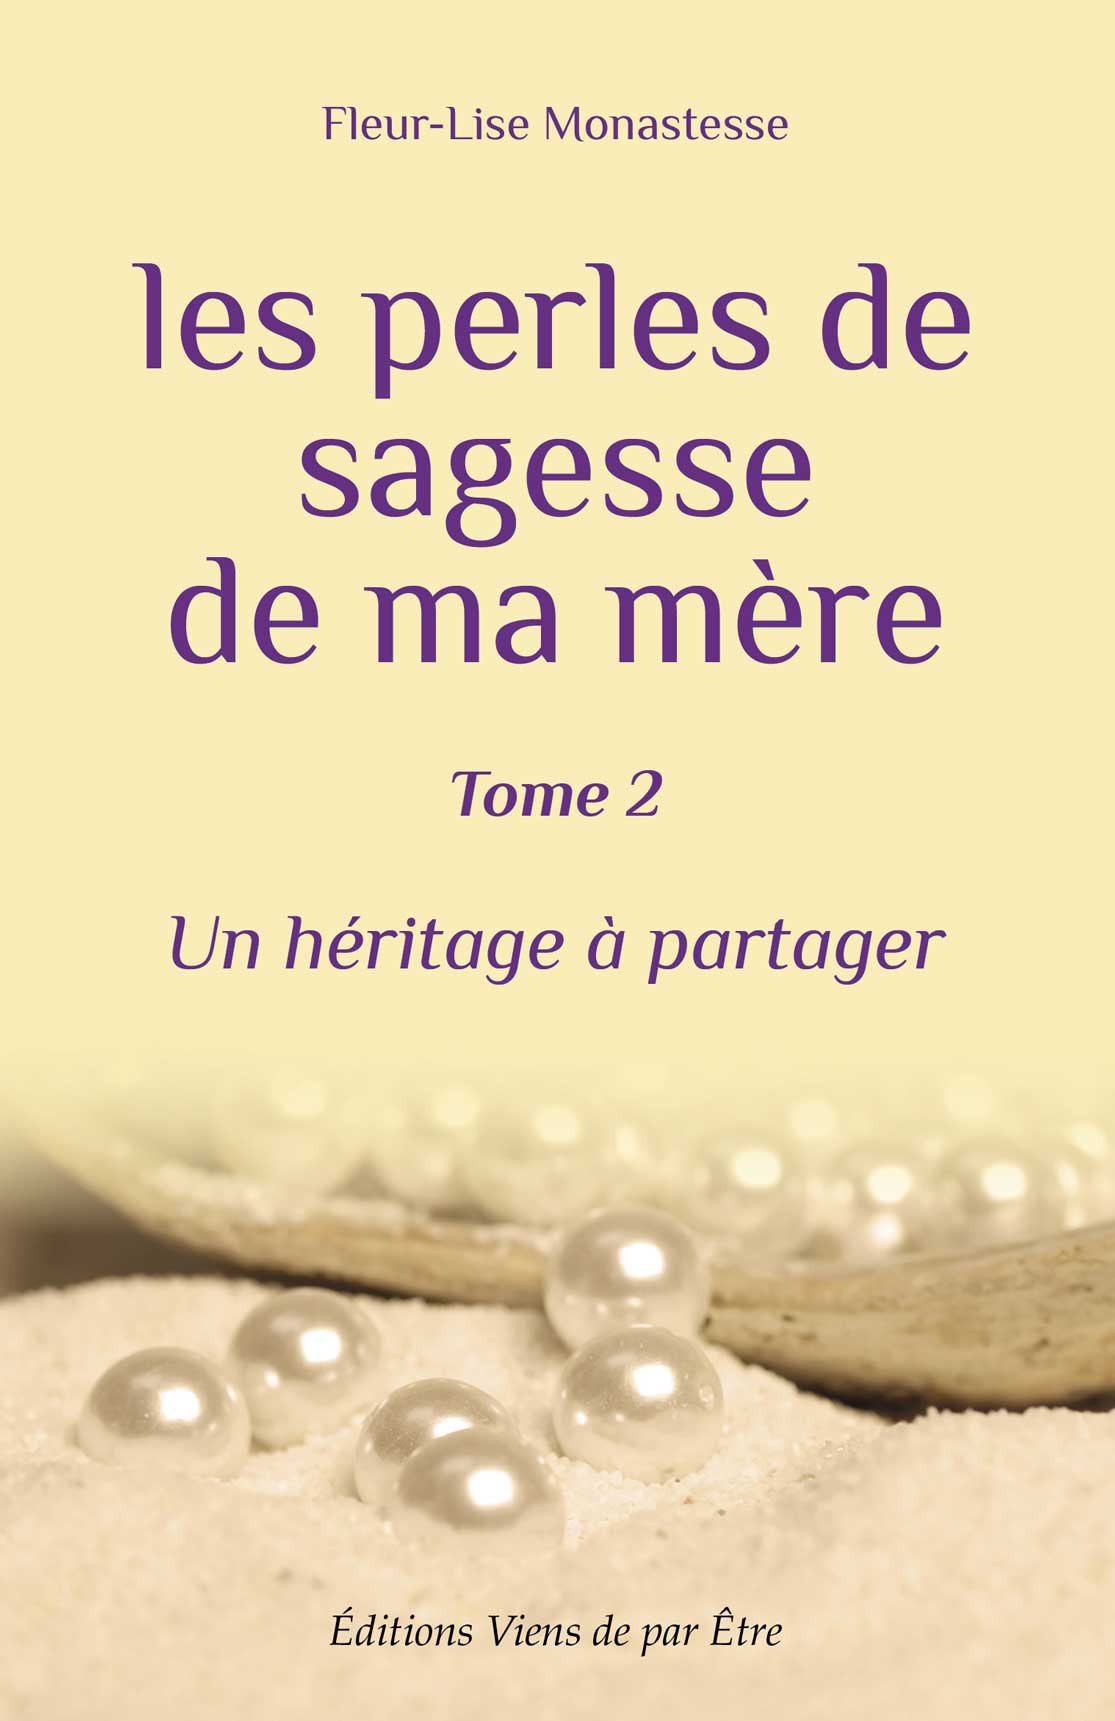 Couverture du tome 2 'Les perles de sagesse de ma mère' de Fleur-Lise Monastesse, présentant des perles blanches sur un fond crème évoquant la transmission de sagesse.